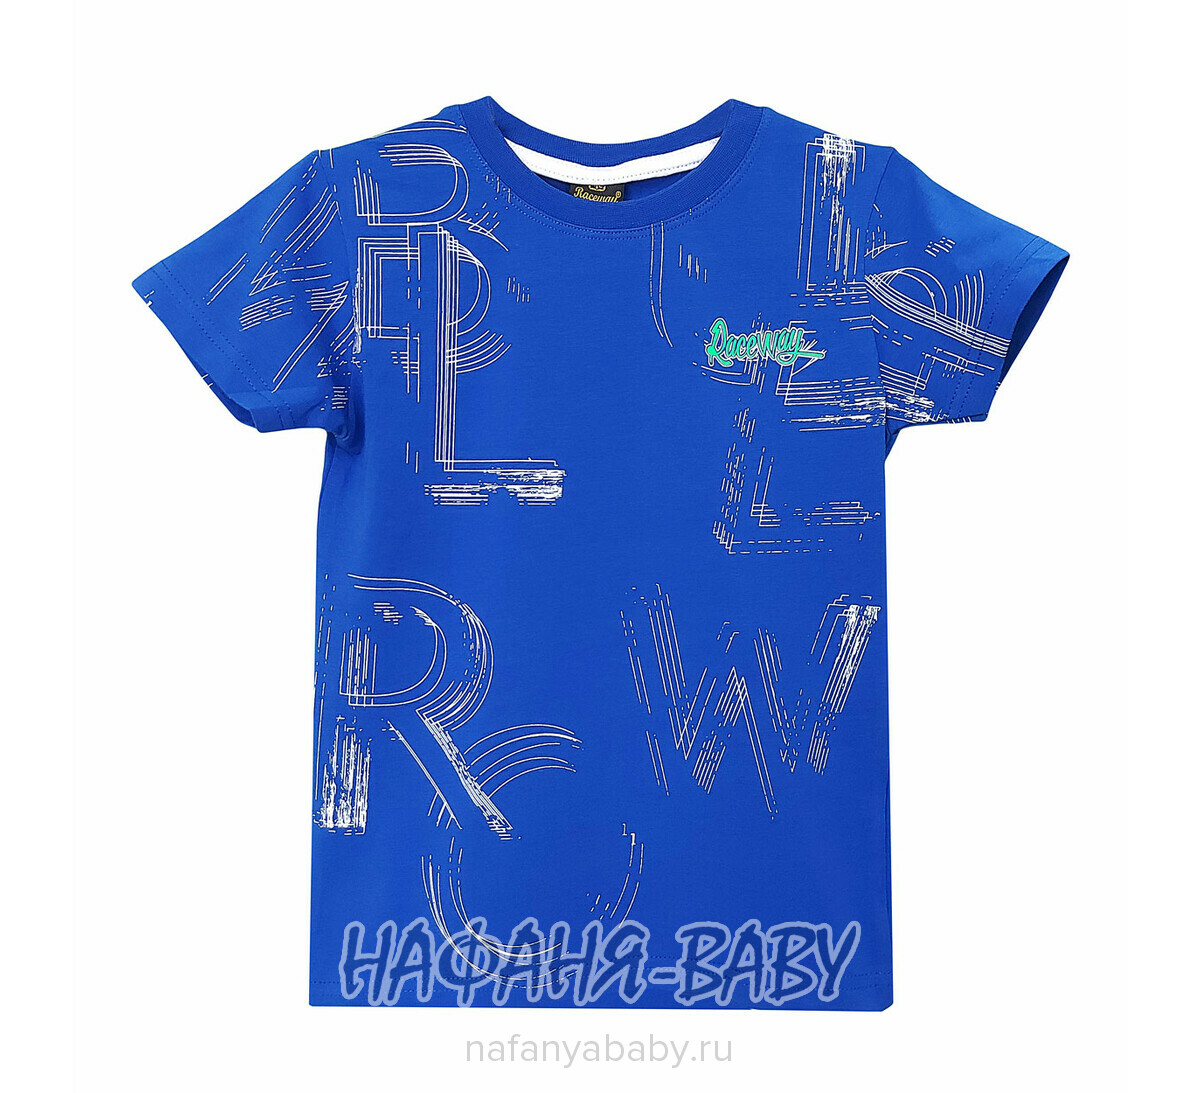 Детская футболка RCW арт. 5830, 5-8 лет, цвет синий, оптом Турция